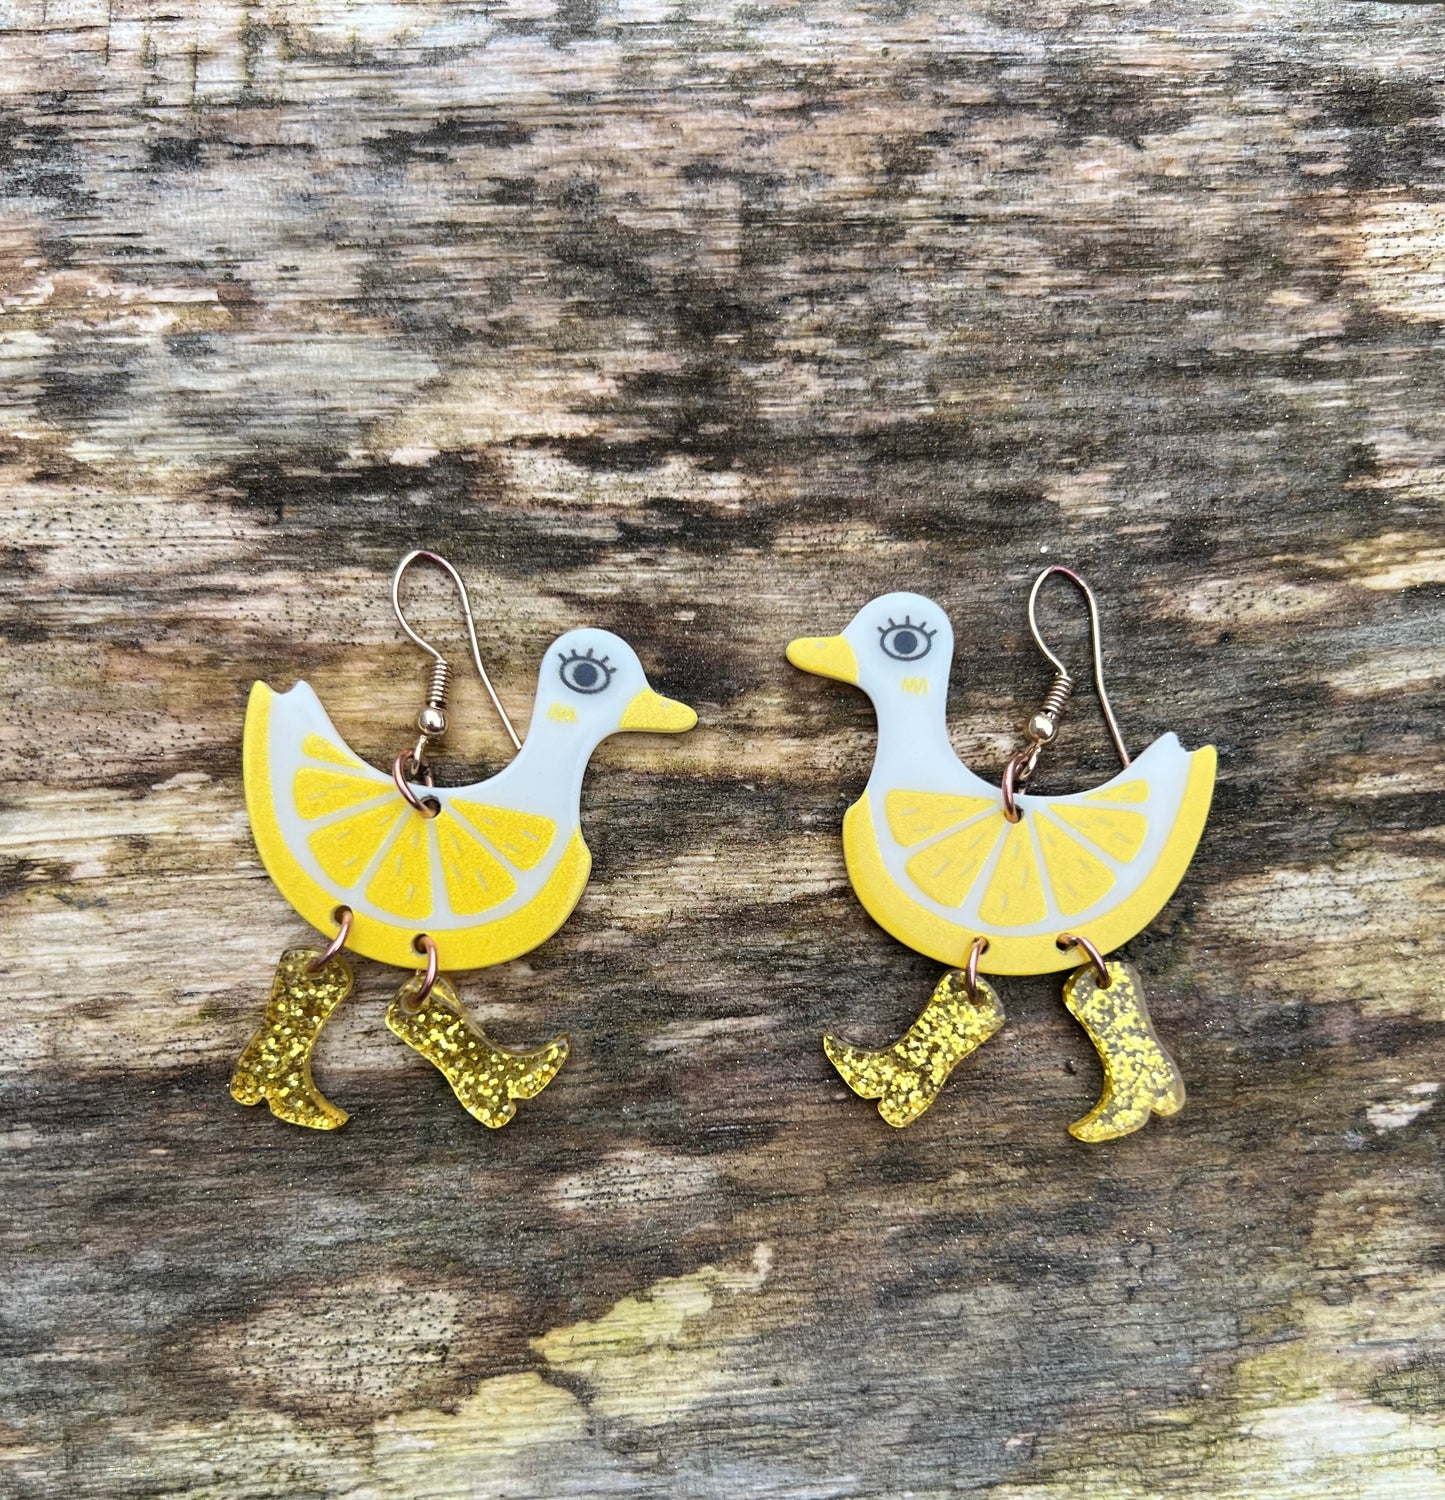 Little lemon duck earrings